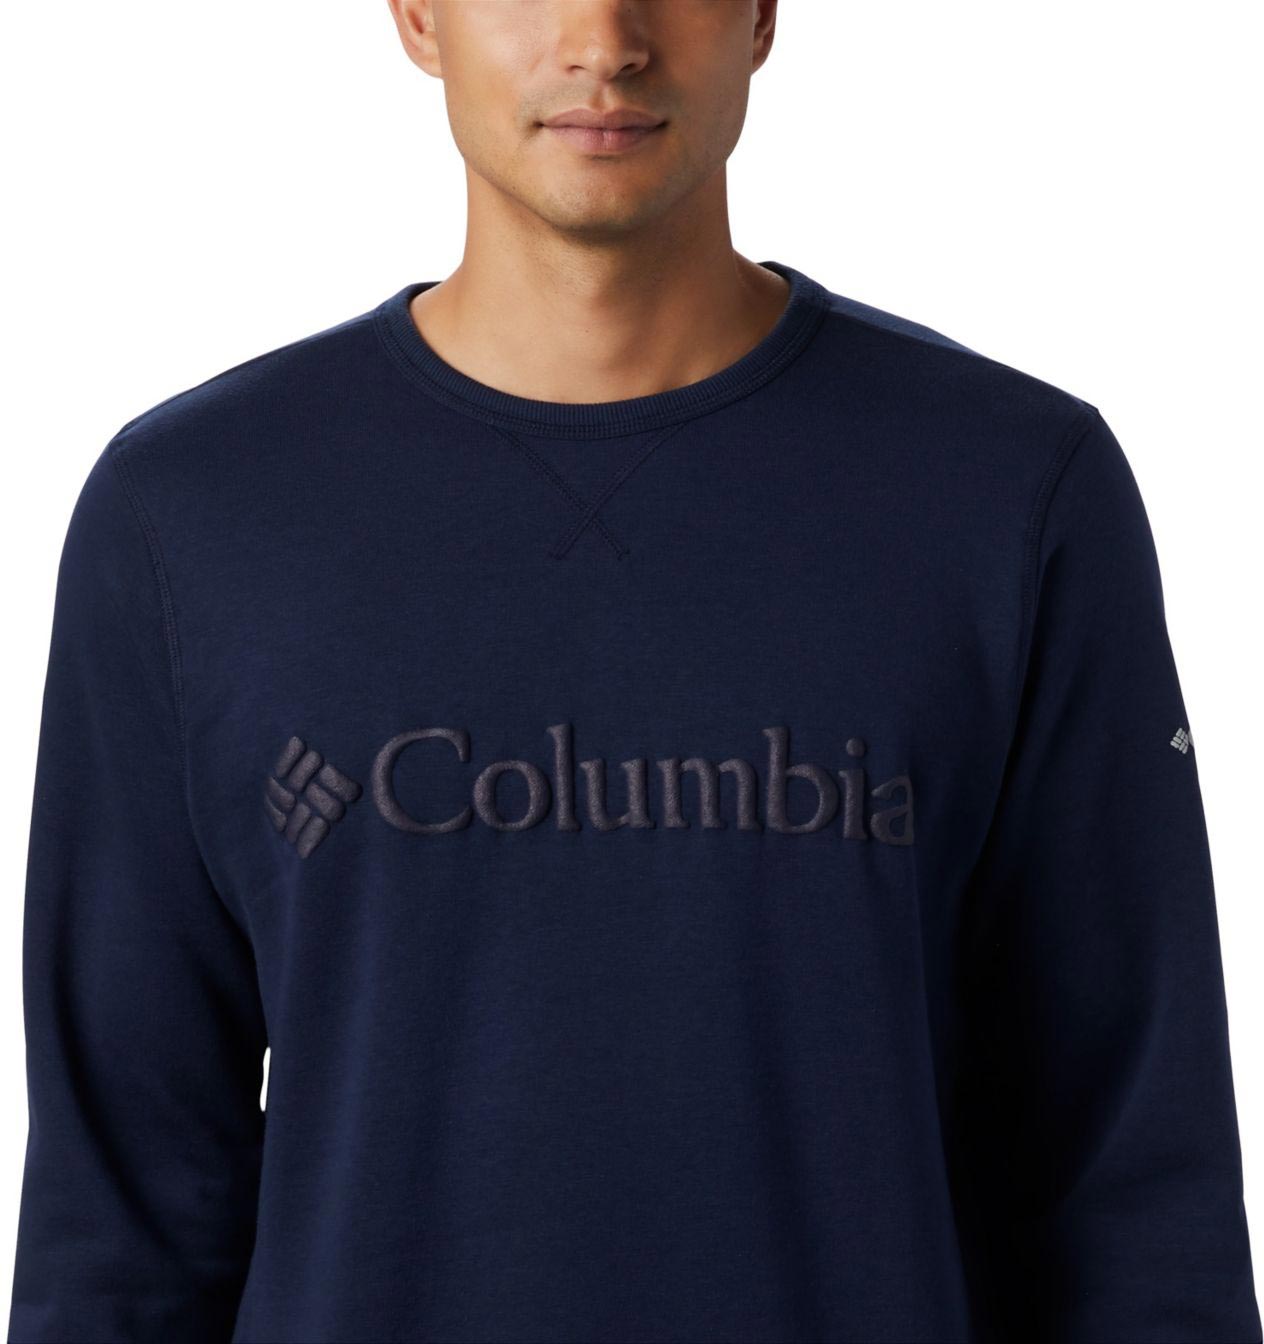 Men's leisure sweatshirt